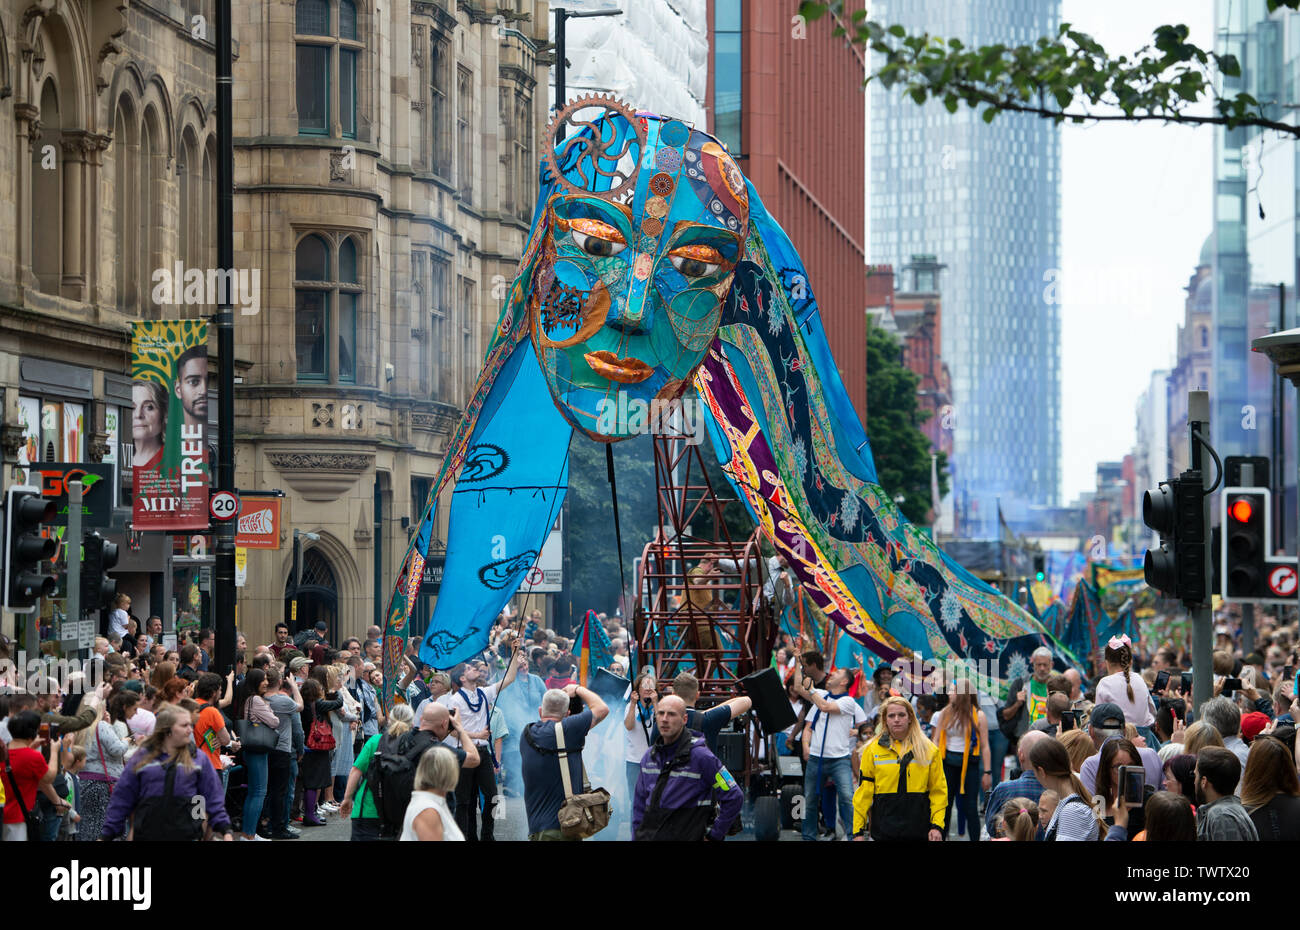 Manchester, Großbritannien. 23. Juni 2019. Die Teilnehmer nehmen an den Manchester Day Parade, eine jährliche Veranstaltung, die die Stadt feiert. Das diesjährige Thema ist "10 aus 10" © Russell Hart/Alamy Leben Nachrichten. Stockfoto